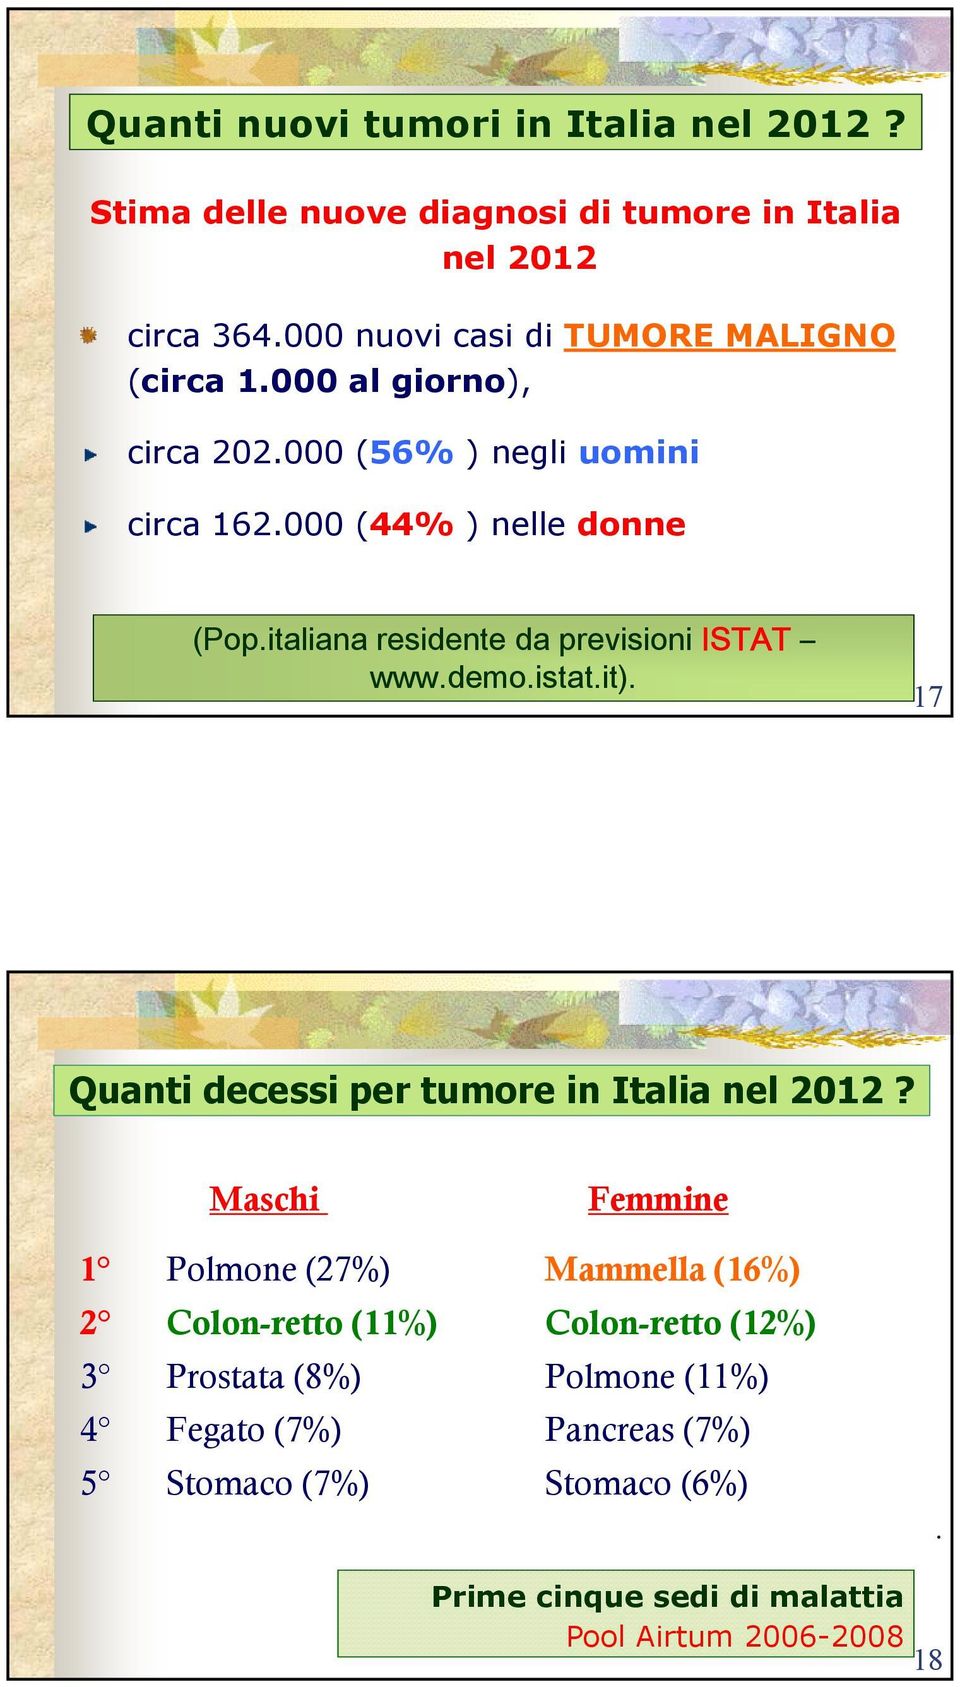 italiana residente da previsioni ISTAT www.demo.istat.it). 17 Quanti decessi per tumore in Italia nel 2012?